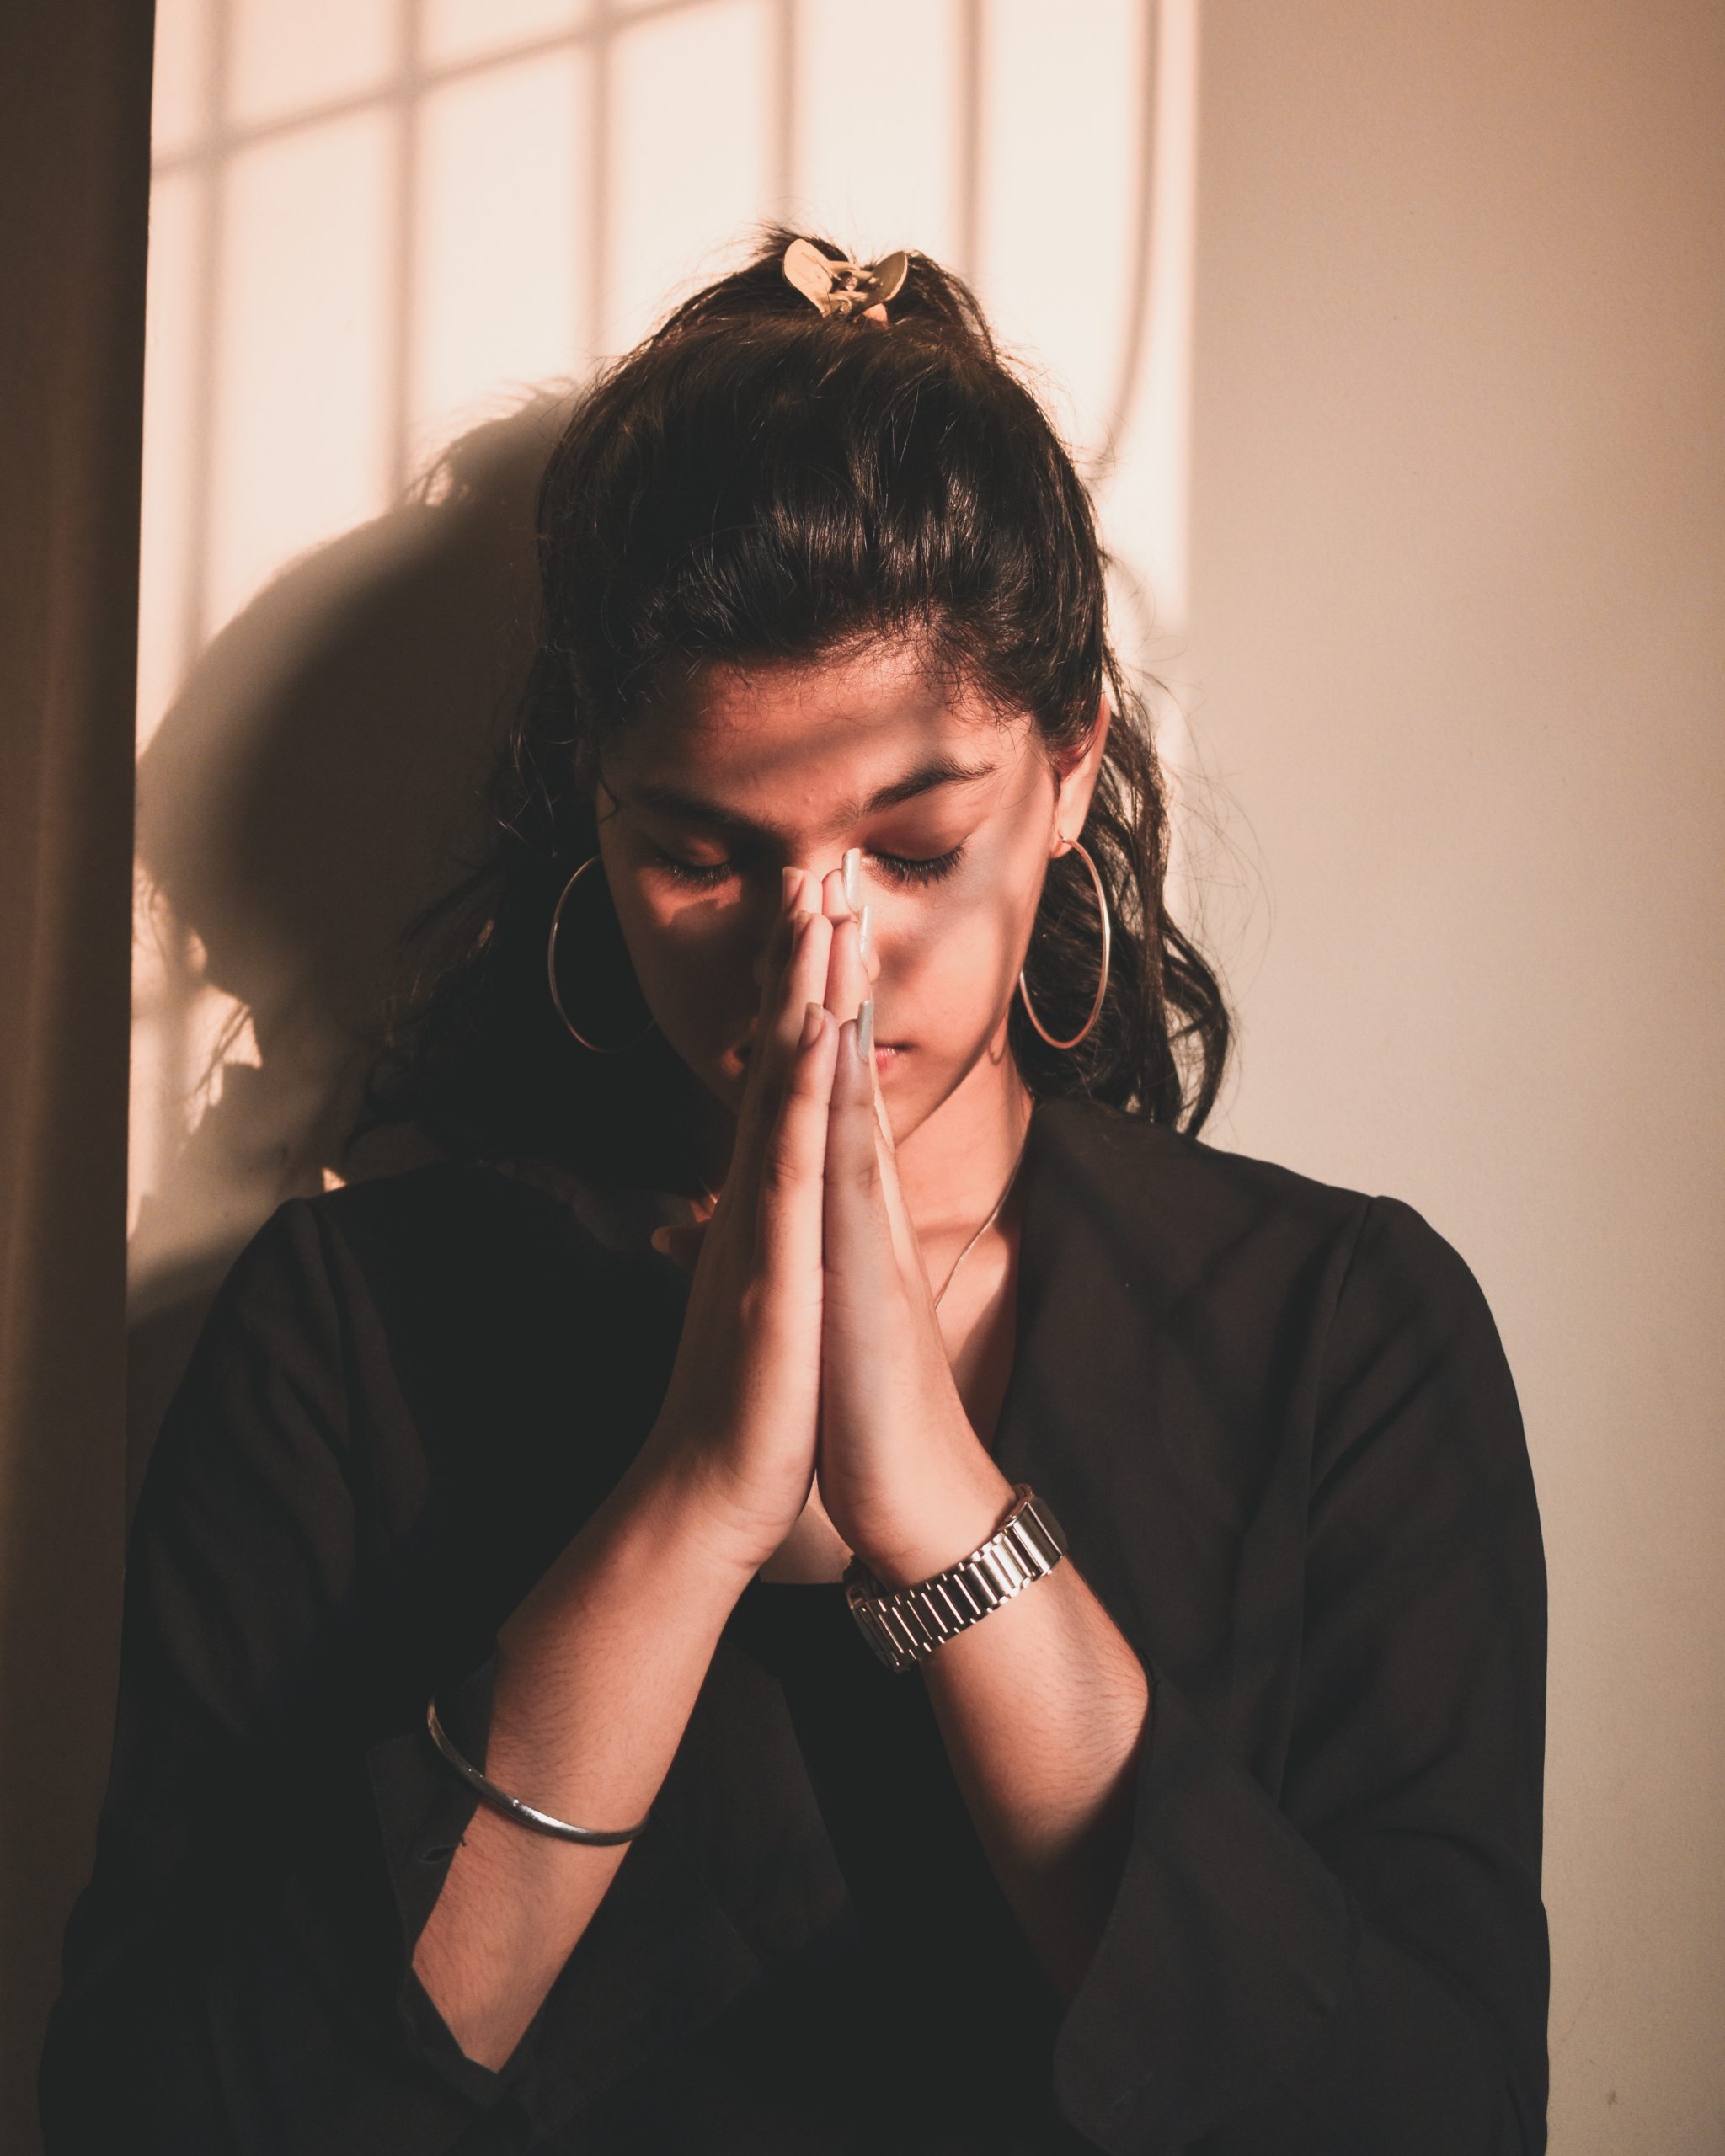 photo-of-woman-praying-4069440